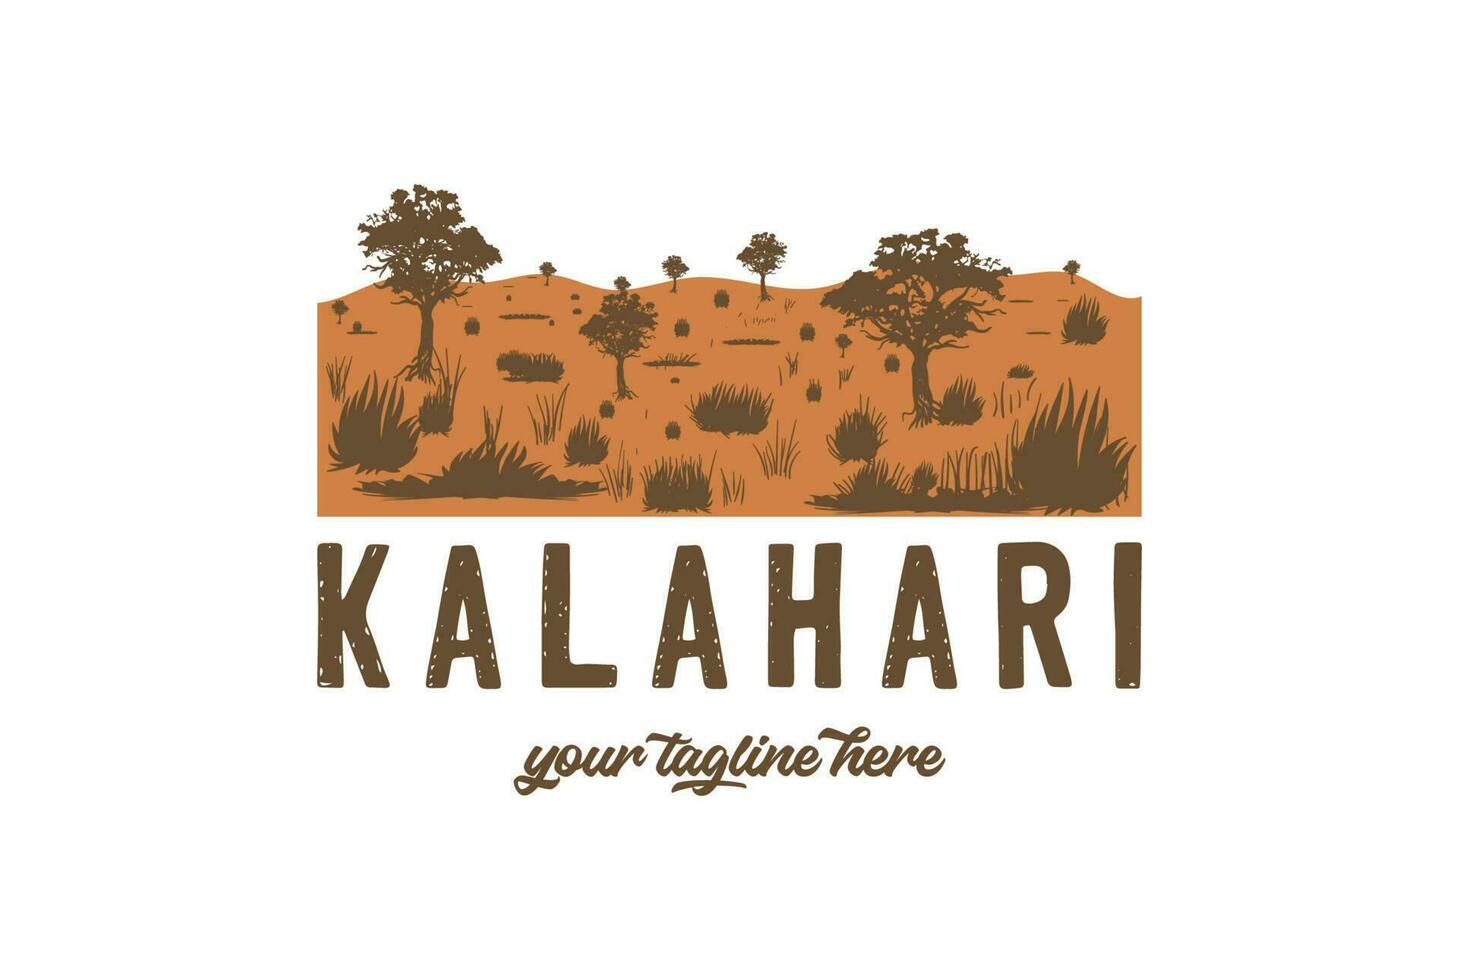 Clásico retro africano kalahari Desierto nacional parque para al aire libre aventuras t camisa logo ilustración vector